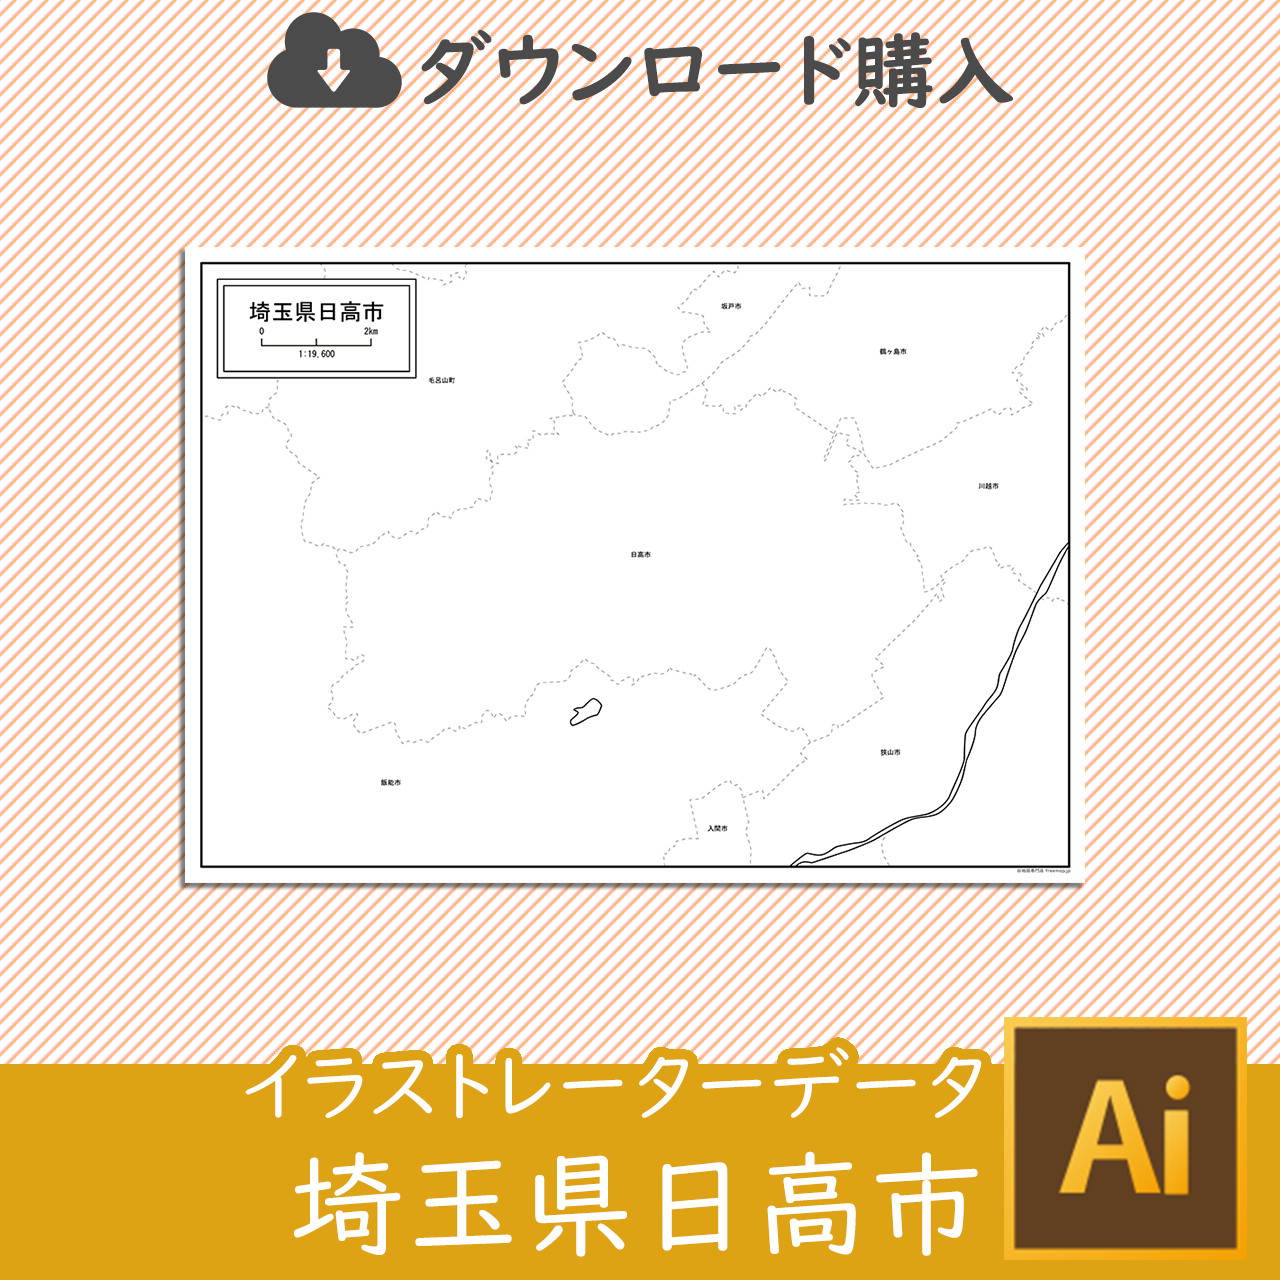 日高市のaiデータのサムネイル画像